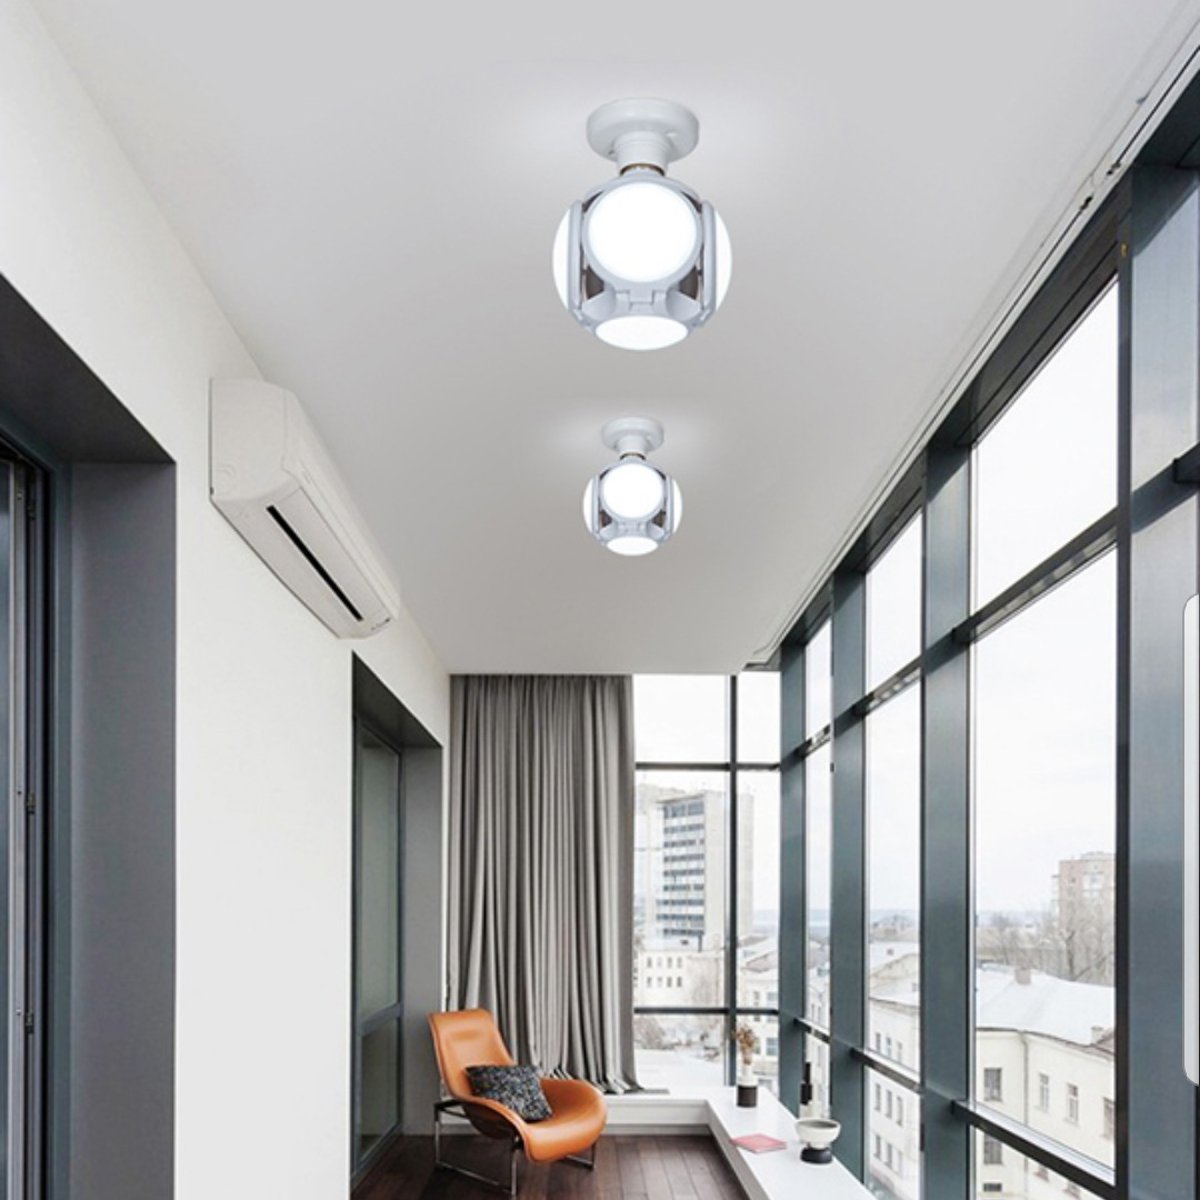 E27-LED-Bulb-UFO-Garage-lights-High-Brightness-Indoor-Warehouse-Ceiling-Light-Workshop-Lamp-1650788